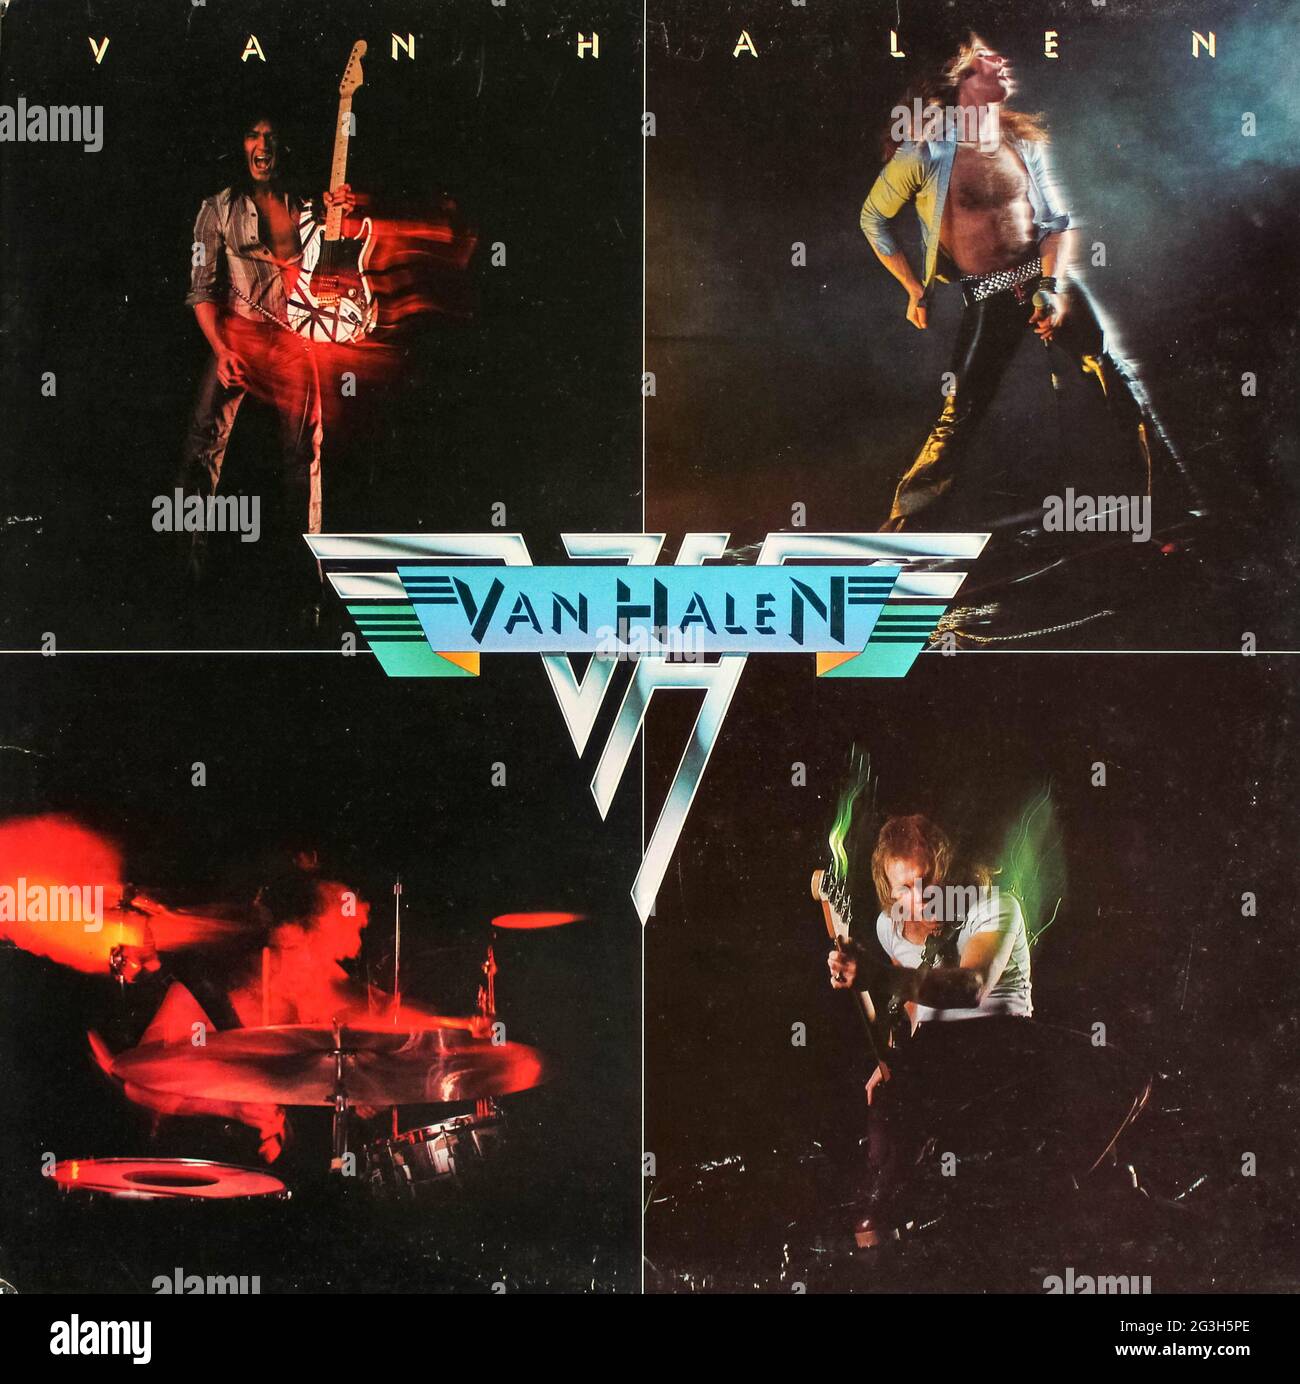 Hard rock, heavy metal and glam metal band, Van Halen music album on vinyl record LP disc. Van Halen is the self-titled debut album cover Stock Photo